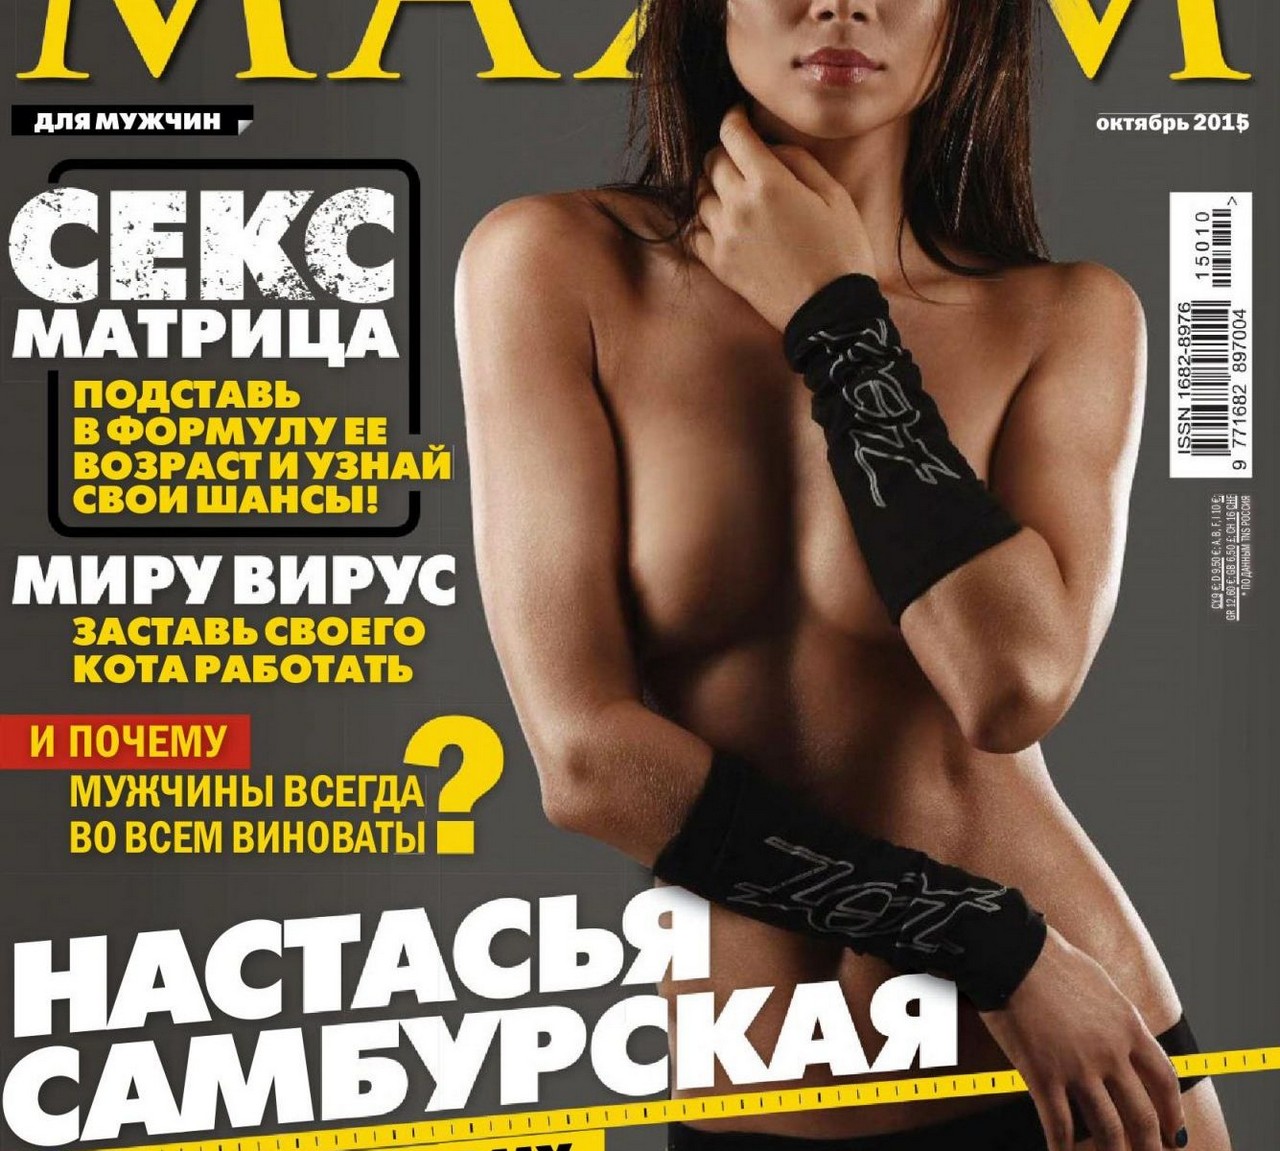 Nastassja Samburskaya Topless